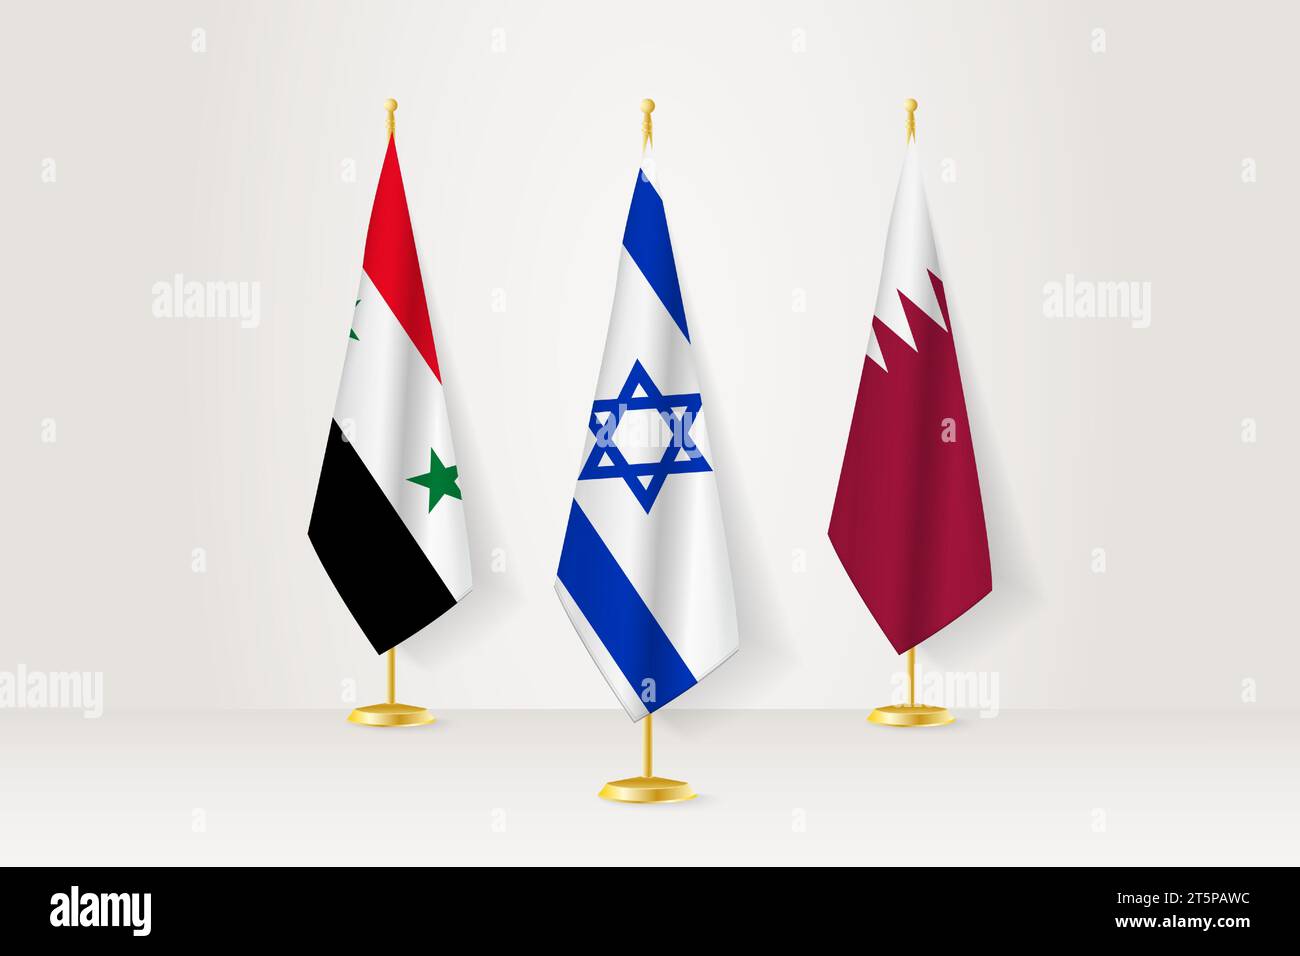 Besprechungskonzept zwischen Israel, Syrien und Katar. Flaggen auf einem Flaggenständer. Stock Vektor